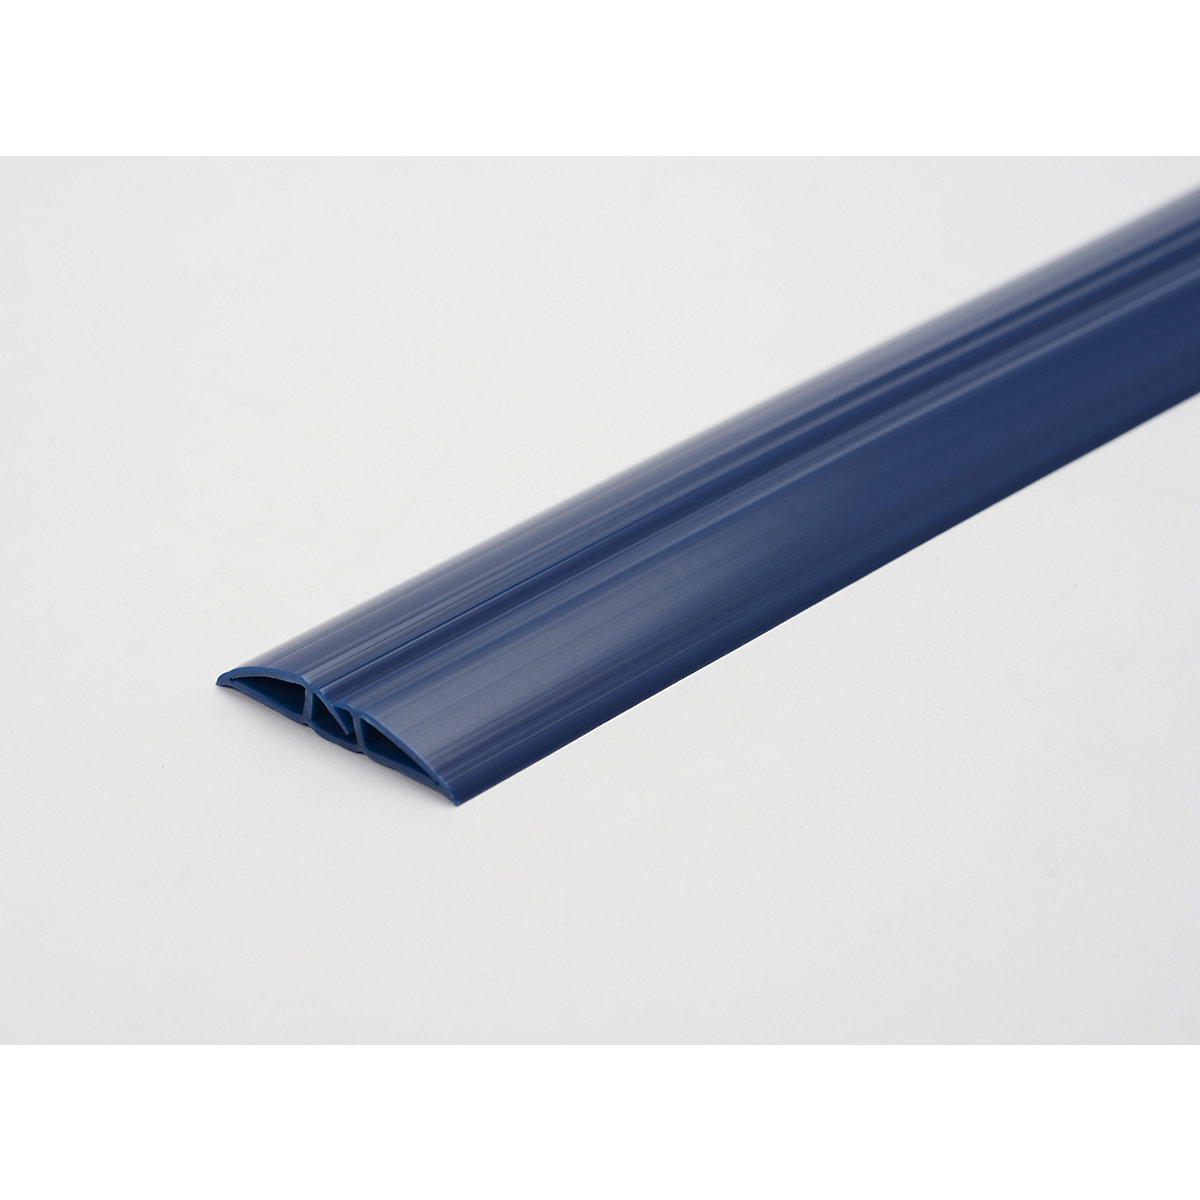 Műanyag kábelvezető padlóhíd, Toploader, kék színben, hossz 1,5 m-5